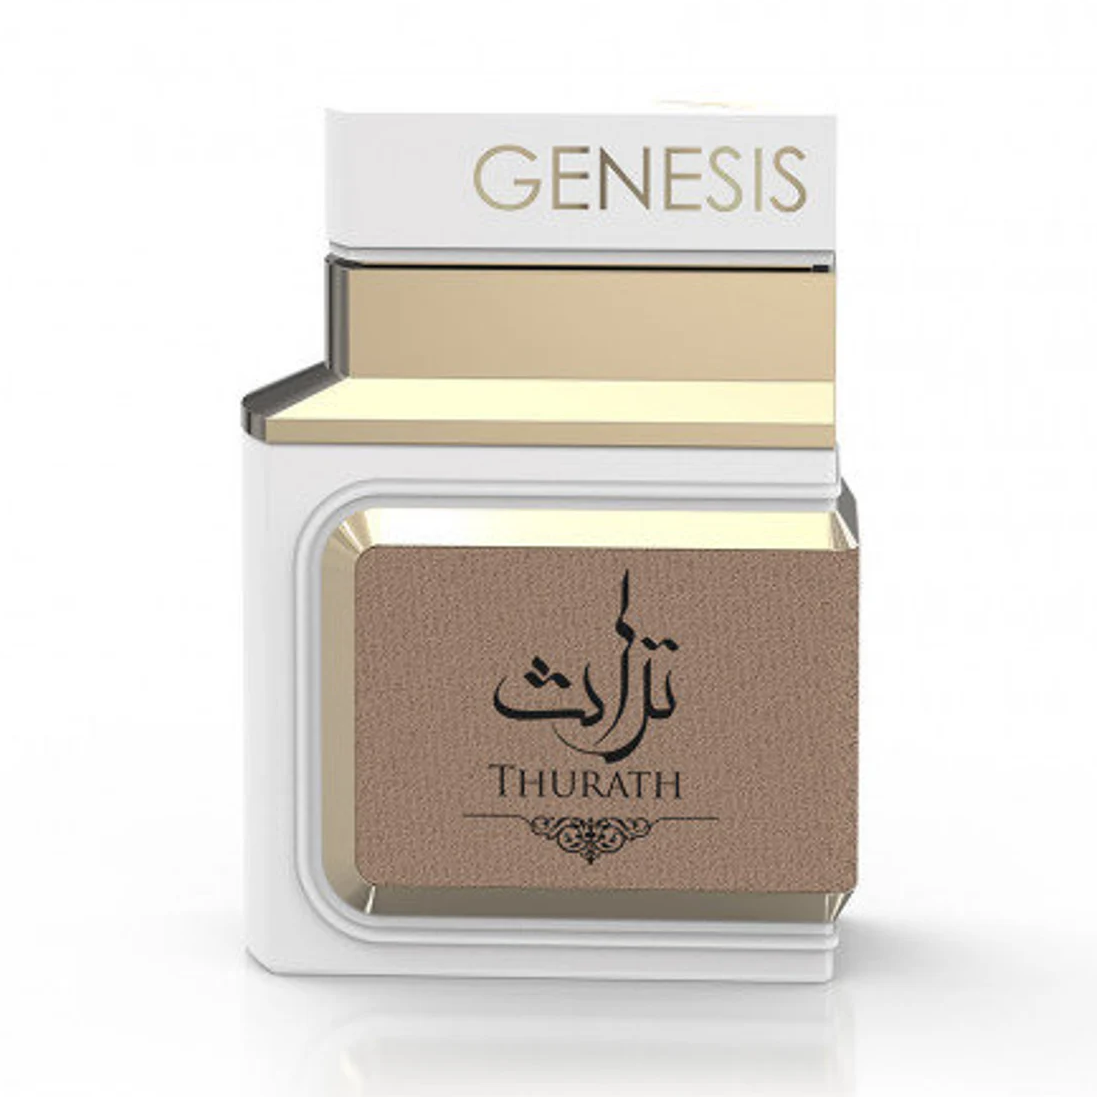 Perfumes for Wholesale – Genesis Thurath by Le Chameau EDP – Wholesale 3.4Oz.